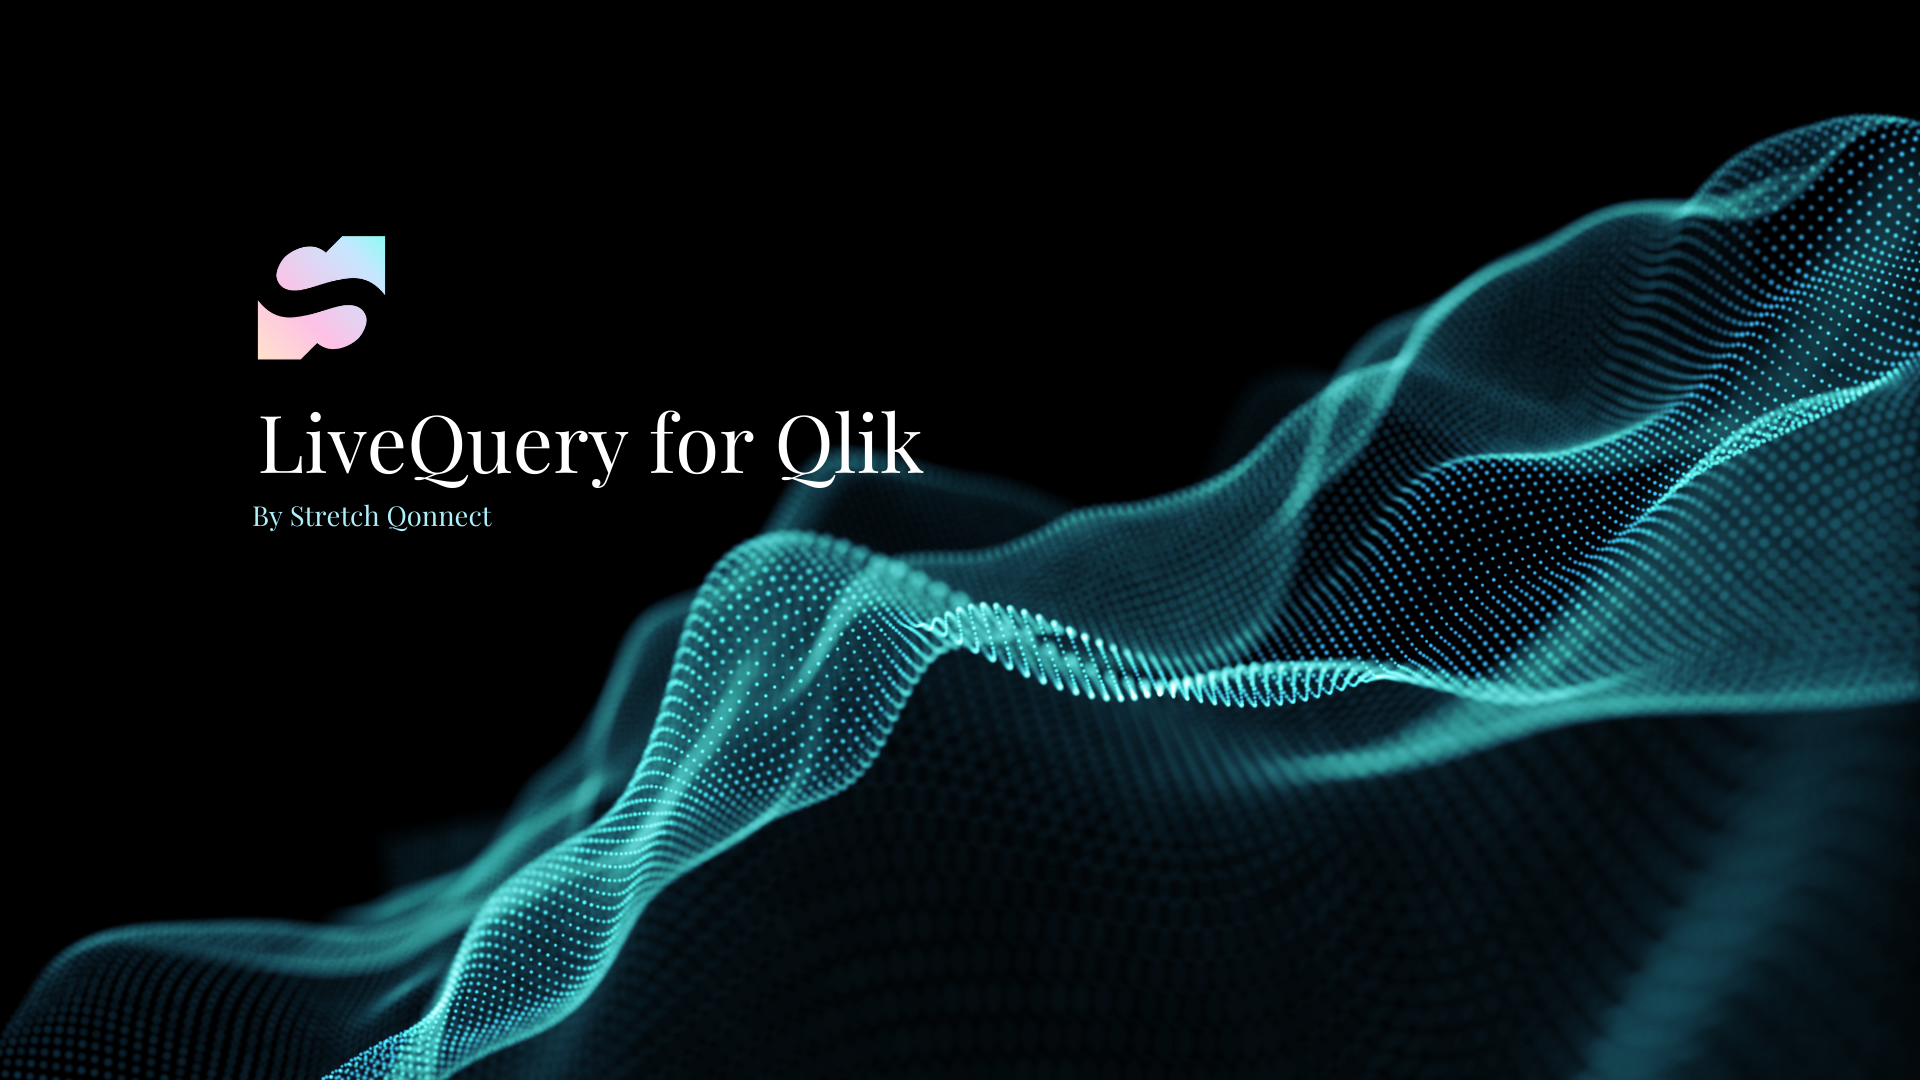 Qlik Sense Going Live with Query: Nếu bạn đang tìm kiếm công cụ mới giúp bạn truy cập và phân tích dữ liệu một cách nhanh chóng và hiệu quả, Qlik Sense Going Live with Query sẽ là lựa chọn hoàn hảo cho bạn. Với tính năng này, bạn có thể tăng cường khả năng tiếp cận dữ liệu và thực thi các truy vấn thông qua Qlik Sense. Hãy cùng xem hình ảnh để khám phá thêm về tính năng thú vị này.